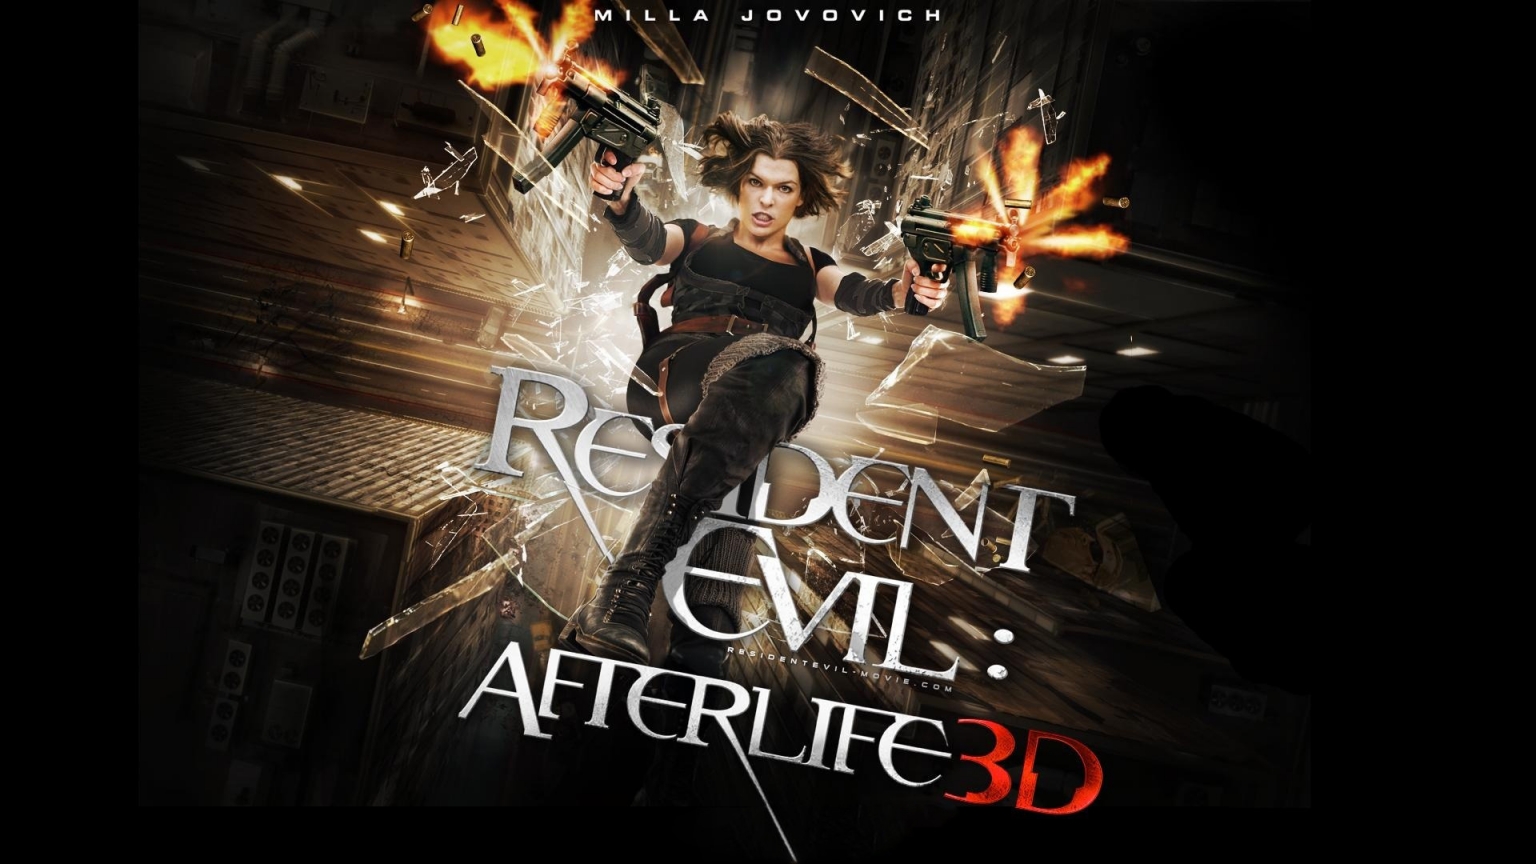 Resident Evil Afterlife 3D Poster for 1536 x 864 HDTV resolution